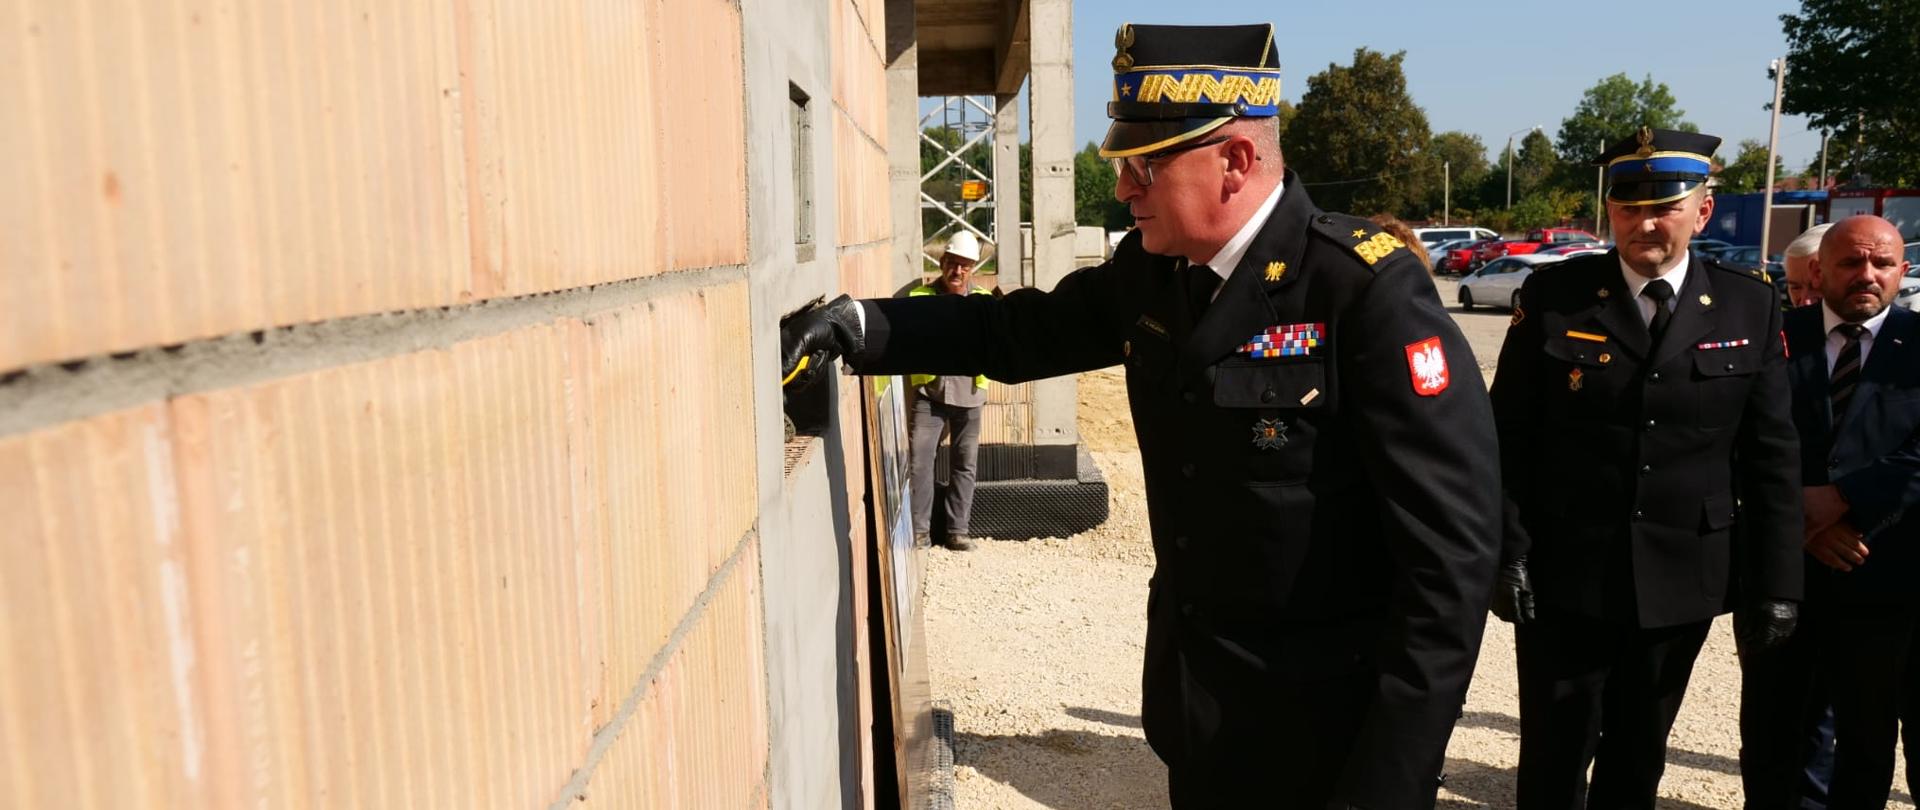 Zastępca komendanta głównego PSP na małej łopatce wkłada trochę zaprawy budowlanej na mur nowej komendy